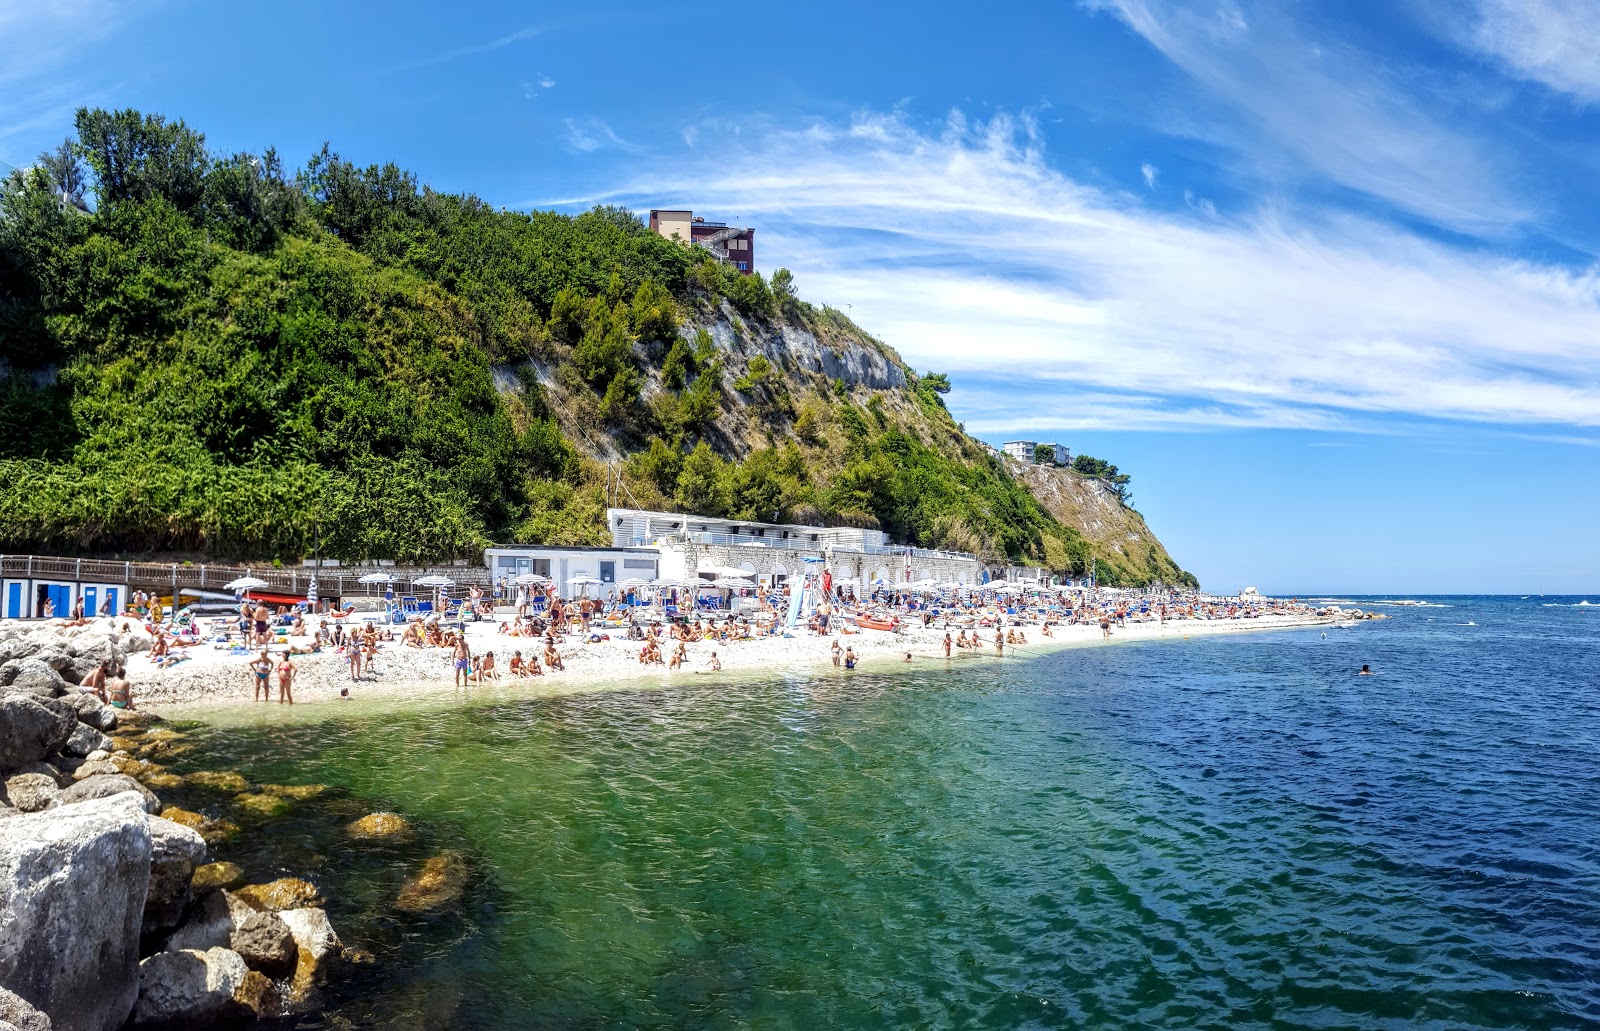 Spiaggia del Passetto的照片 具有非常干净级别的清洁度